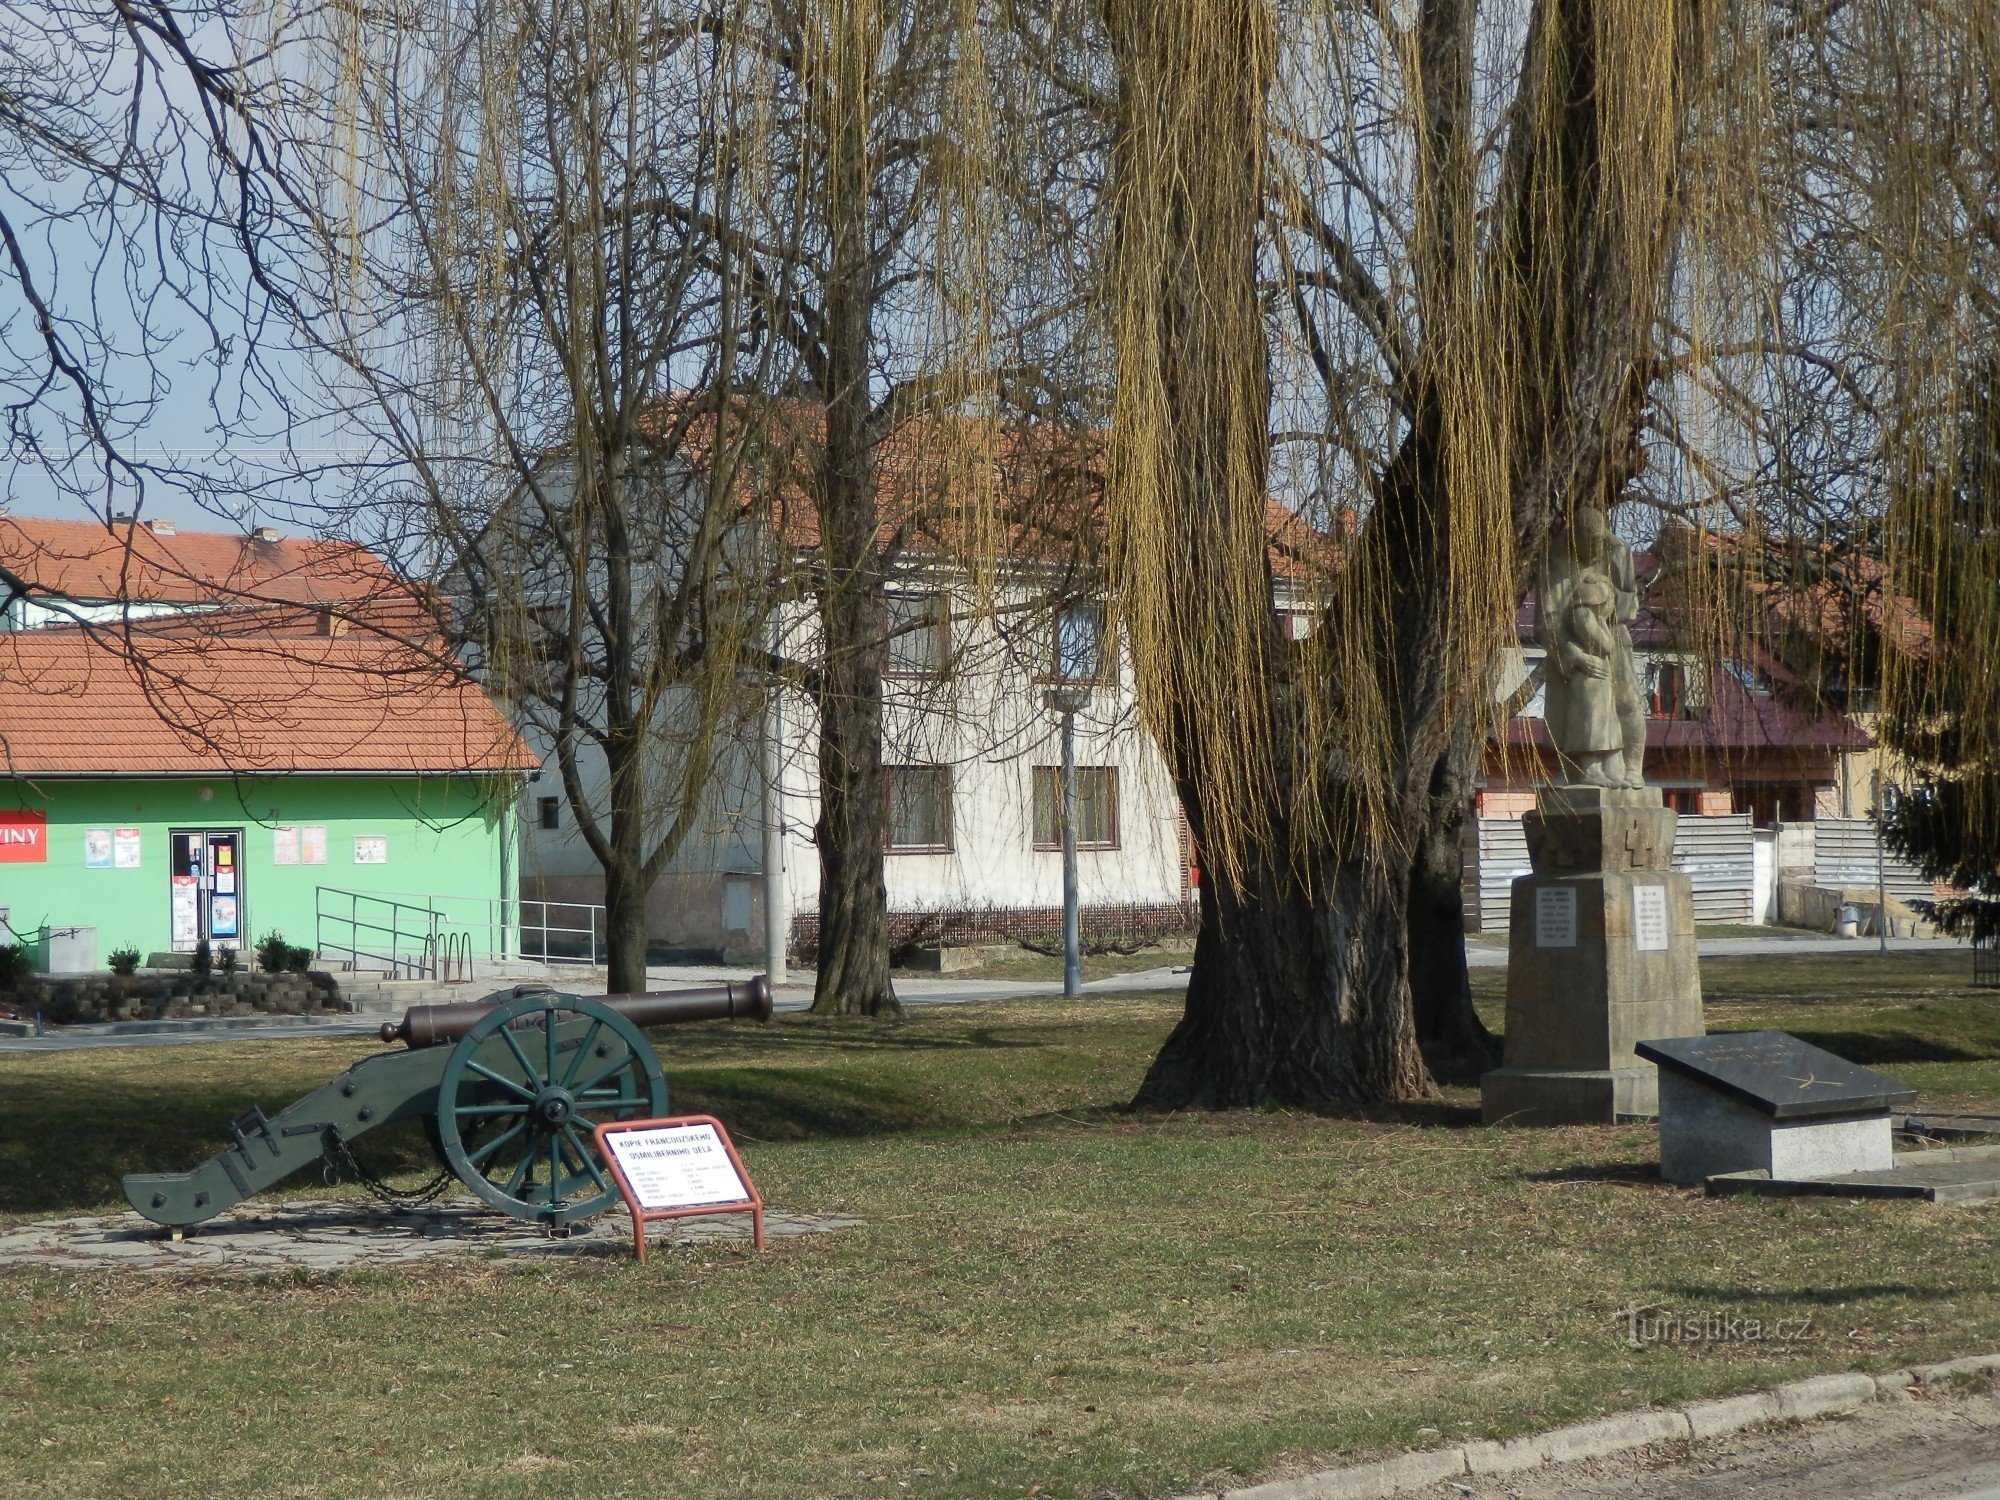 Tvarožná - små monumenter og attraktioner i landsbyen